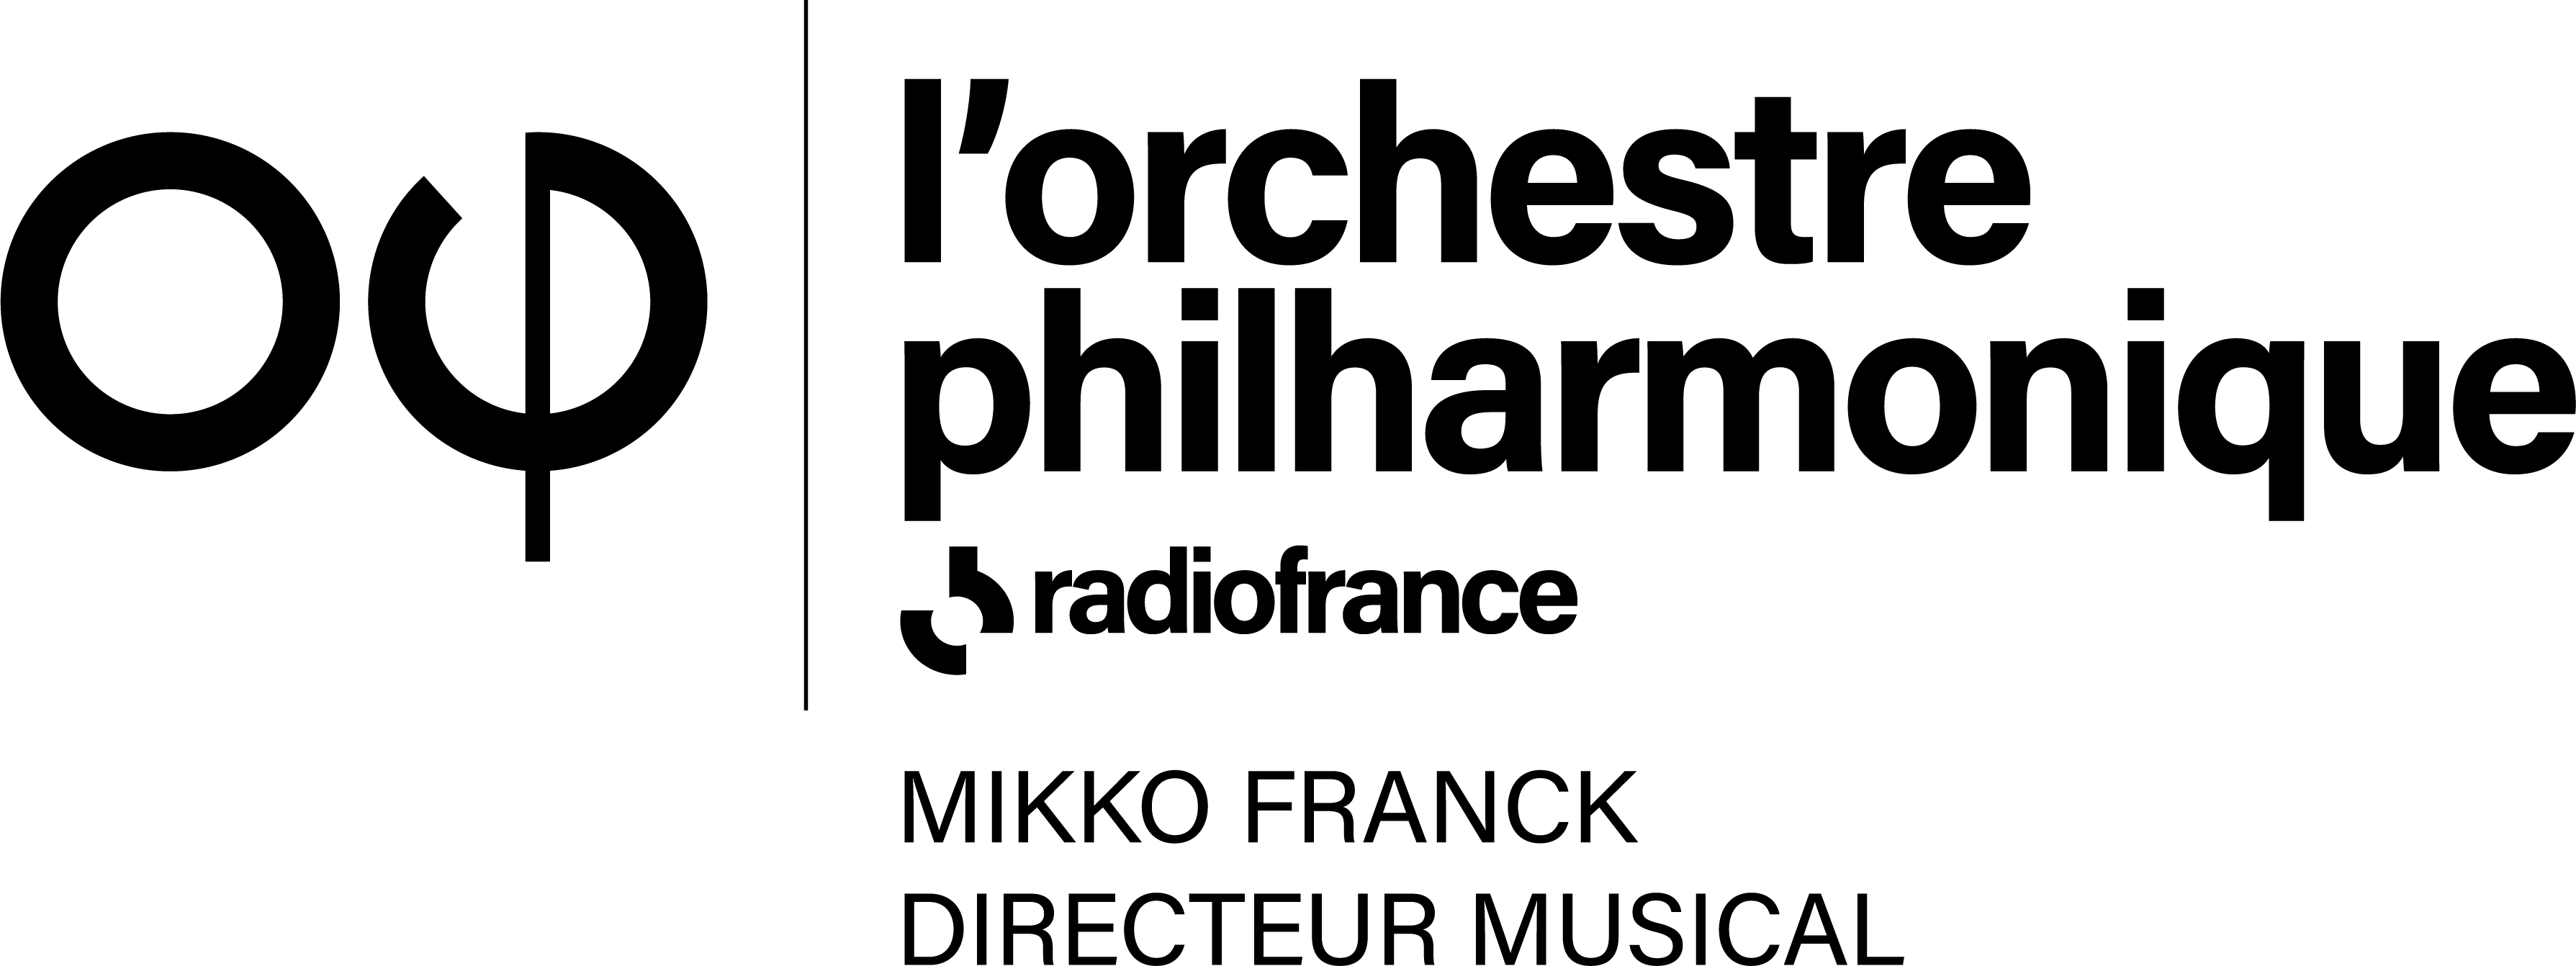 Logo radio france - orchestre philarmonique 